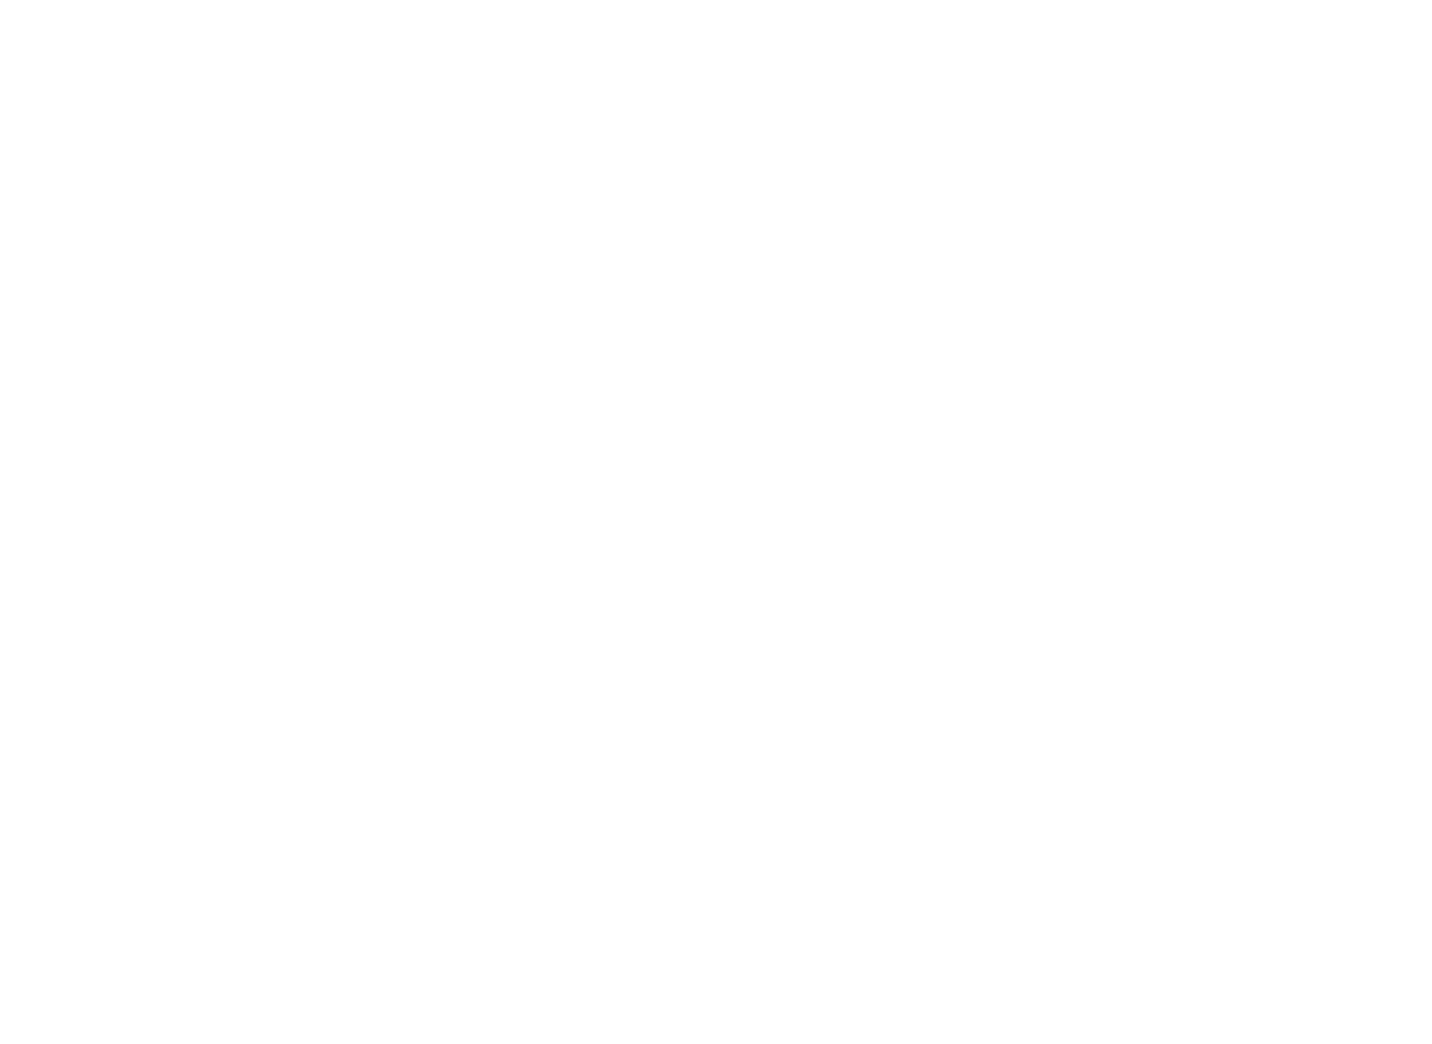 Профиль алюминиевый Flexy IZI KARNIZ2 05 для изготовления скрытых п-образных карнизных ниш с двумя пазами для установки штор и гардин с подсветкой: размер, вид, применение, способ монтажа в Москве, СПБ и России